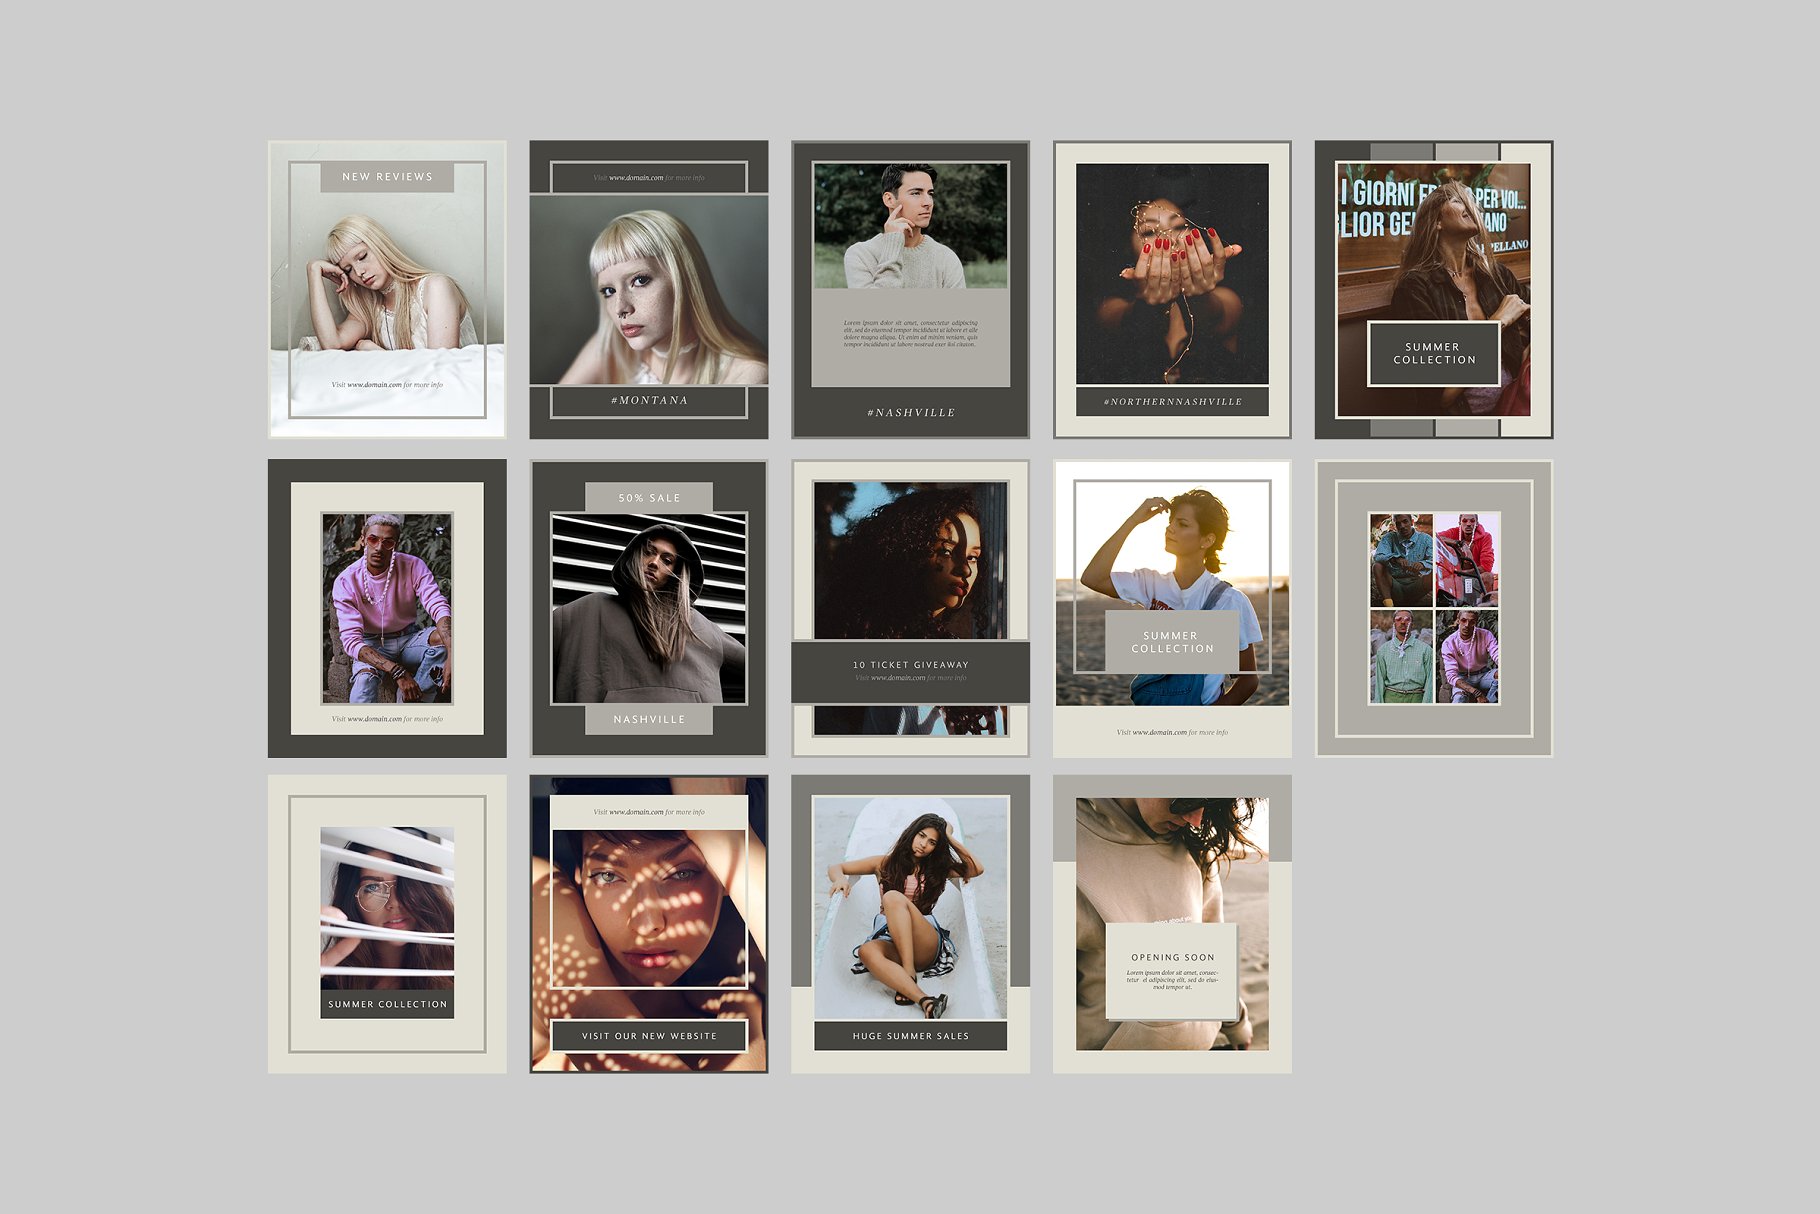 时尚模特摄影主题社交媒体贴图模板大洋岛精选 Nashville Social Media Templates插图7